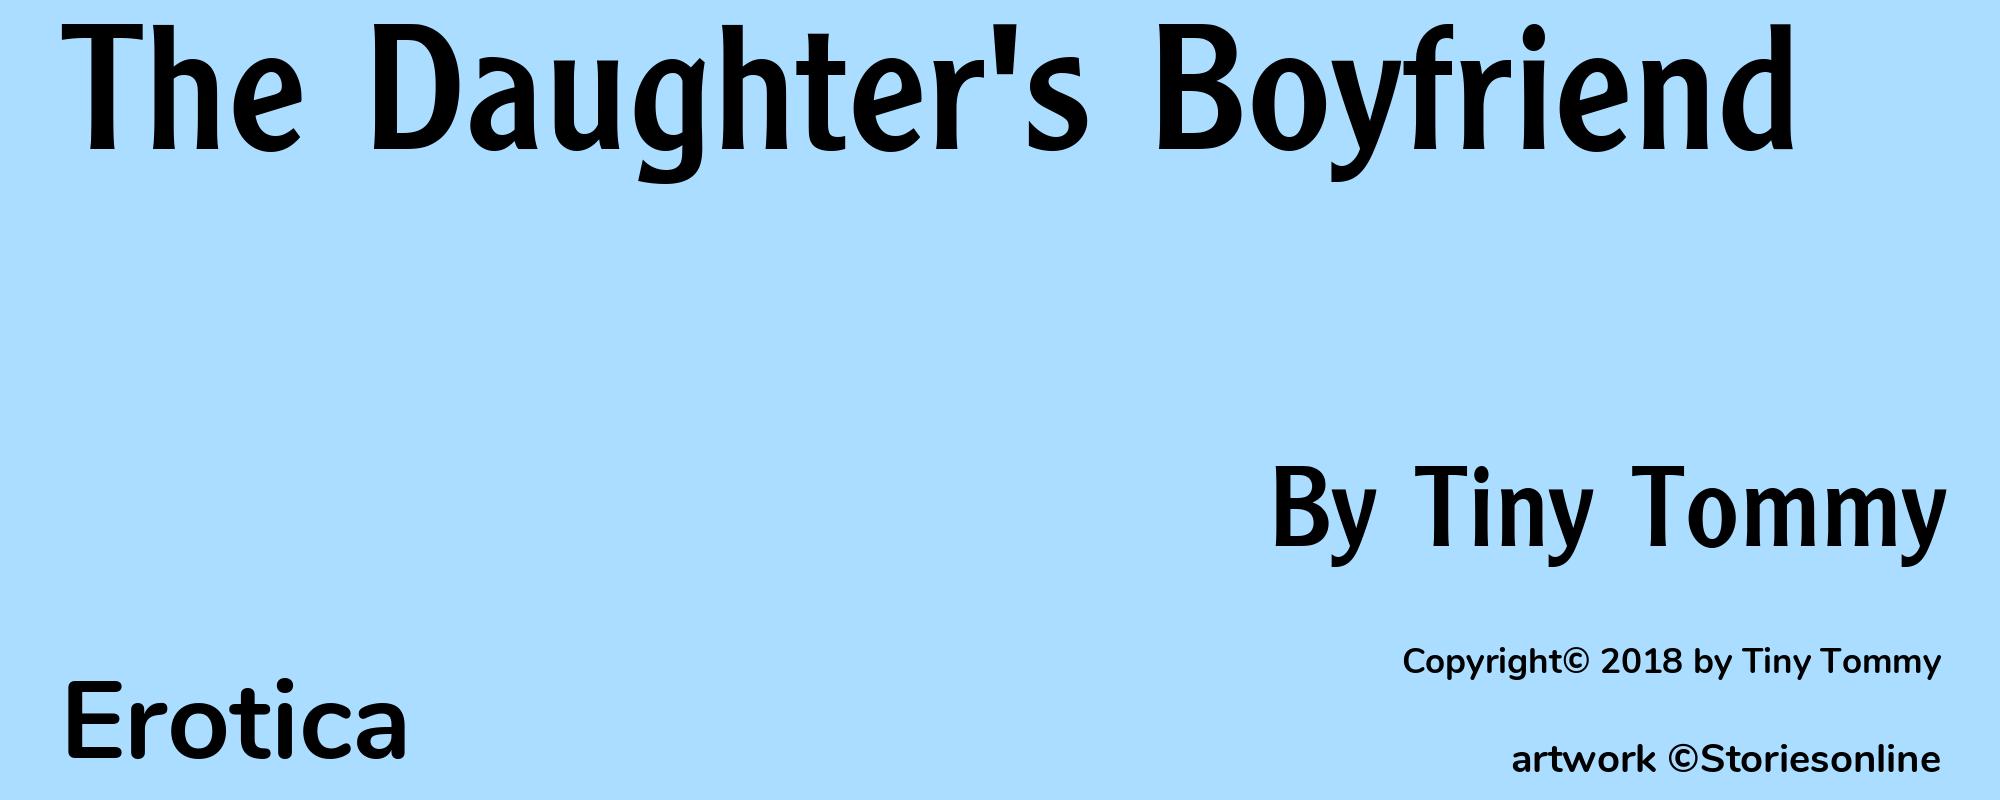 The Daughter's Boyfriend - Cover